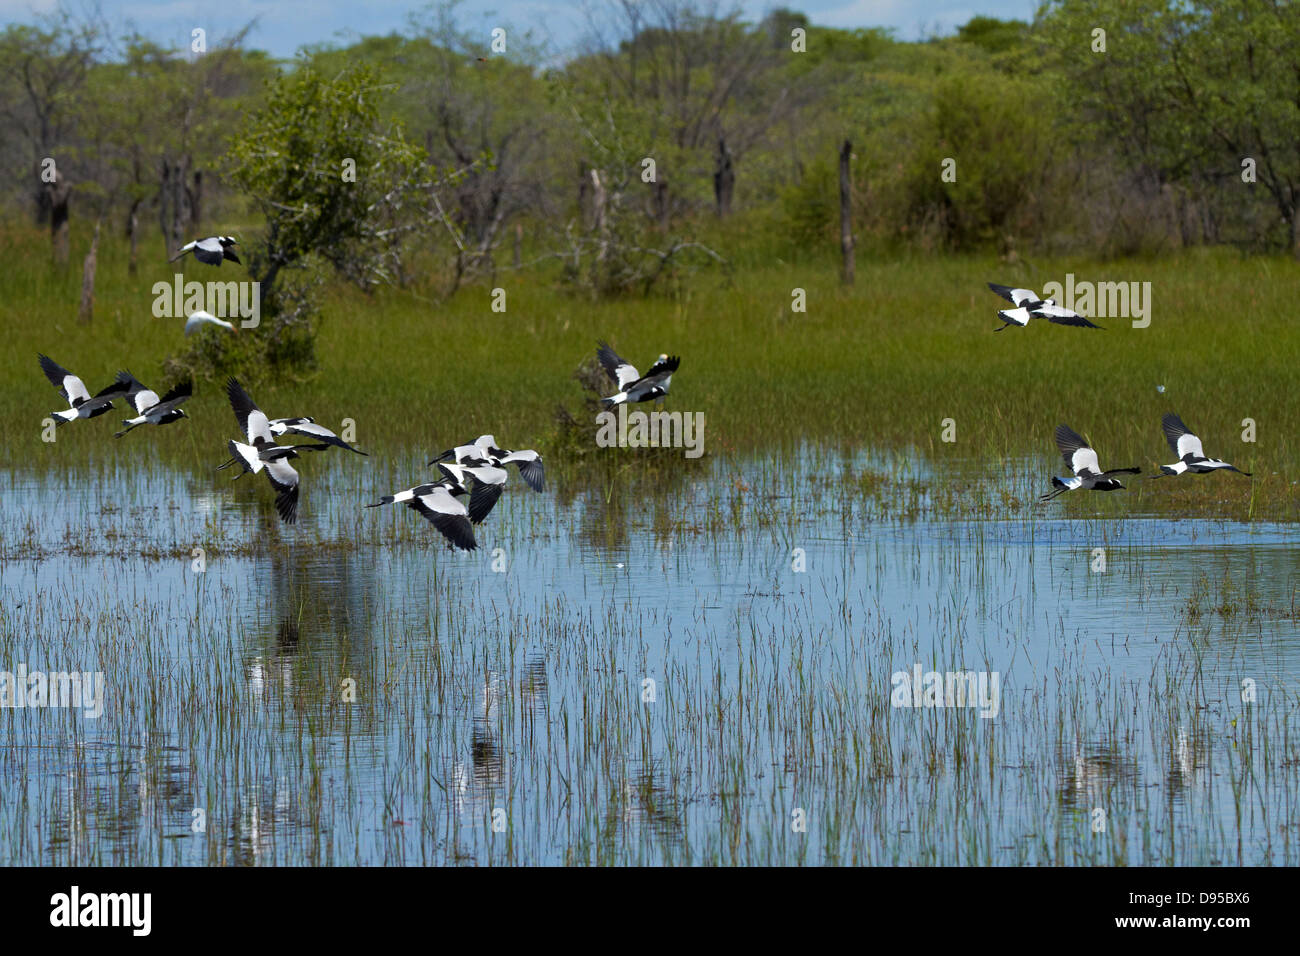 Forgeron forgeron ou vanneaux pluviers (Vanellus armatus), Okavango Delta, Botswana, Africa Banque D'Images